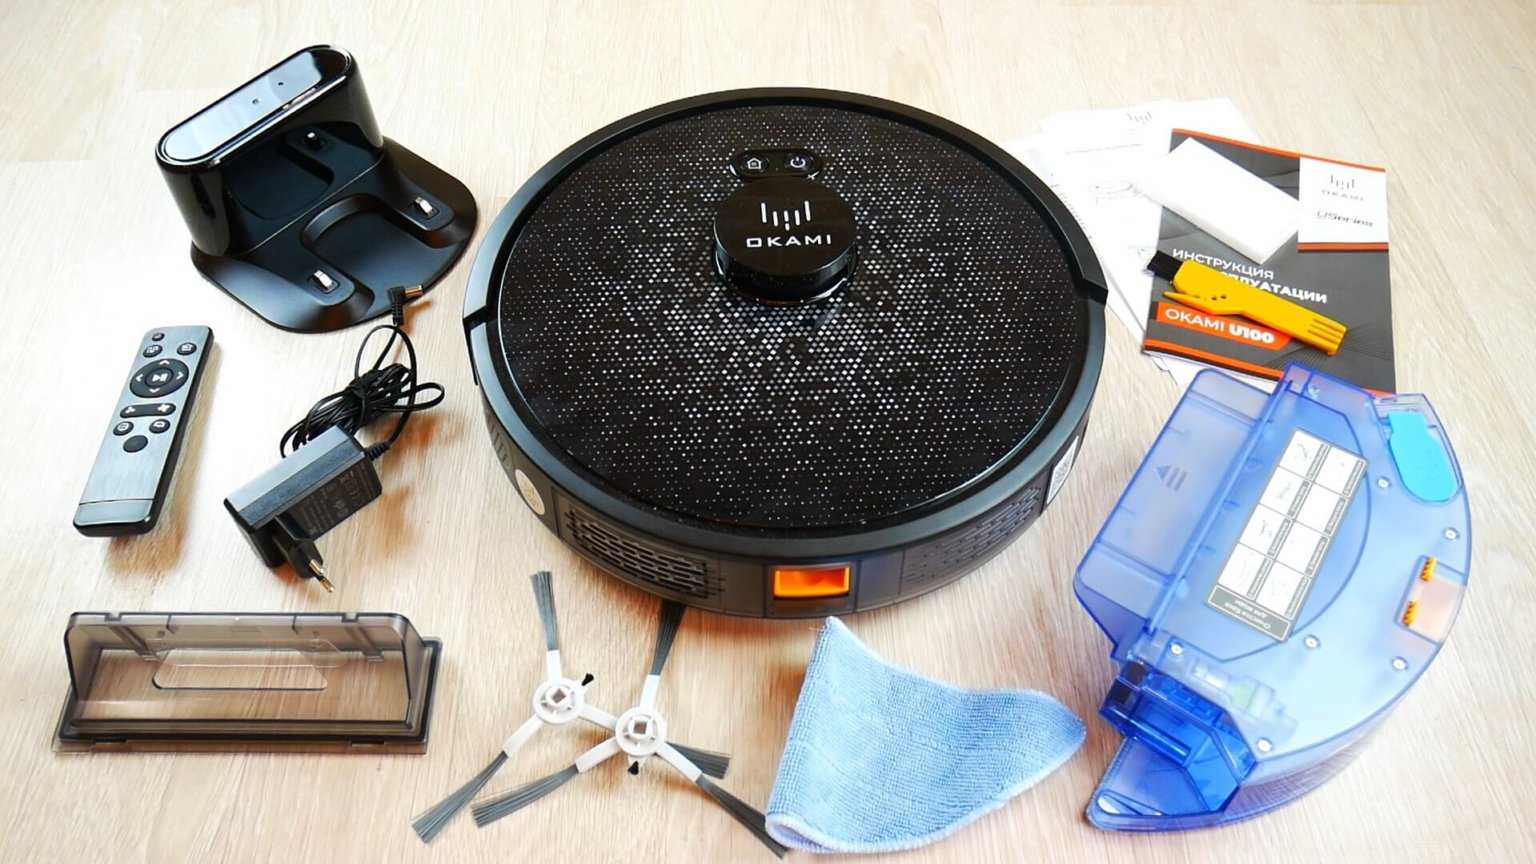 Битва за чистоту: какой робот-пылесос лучше справится с уборкой - интернет-магазин ситилинк